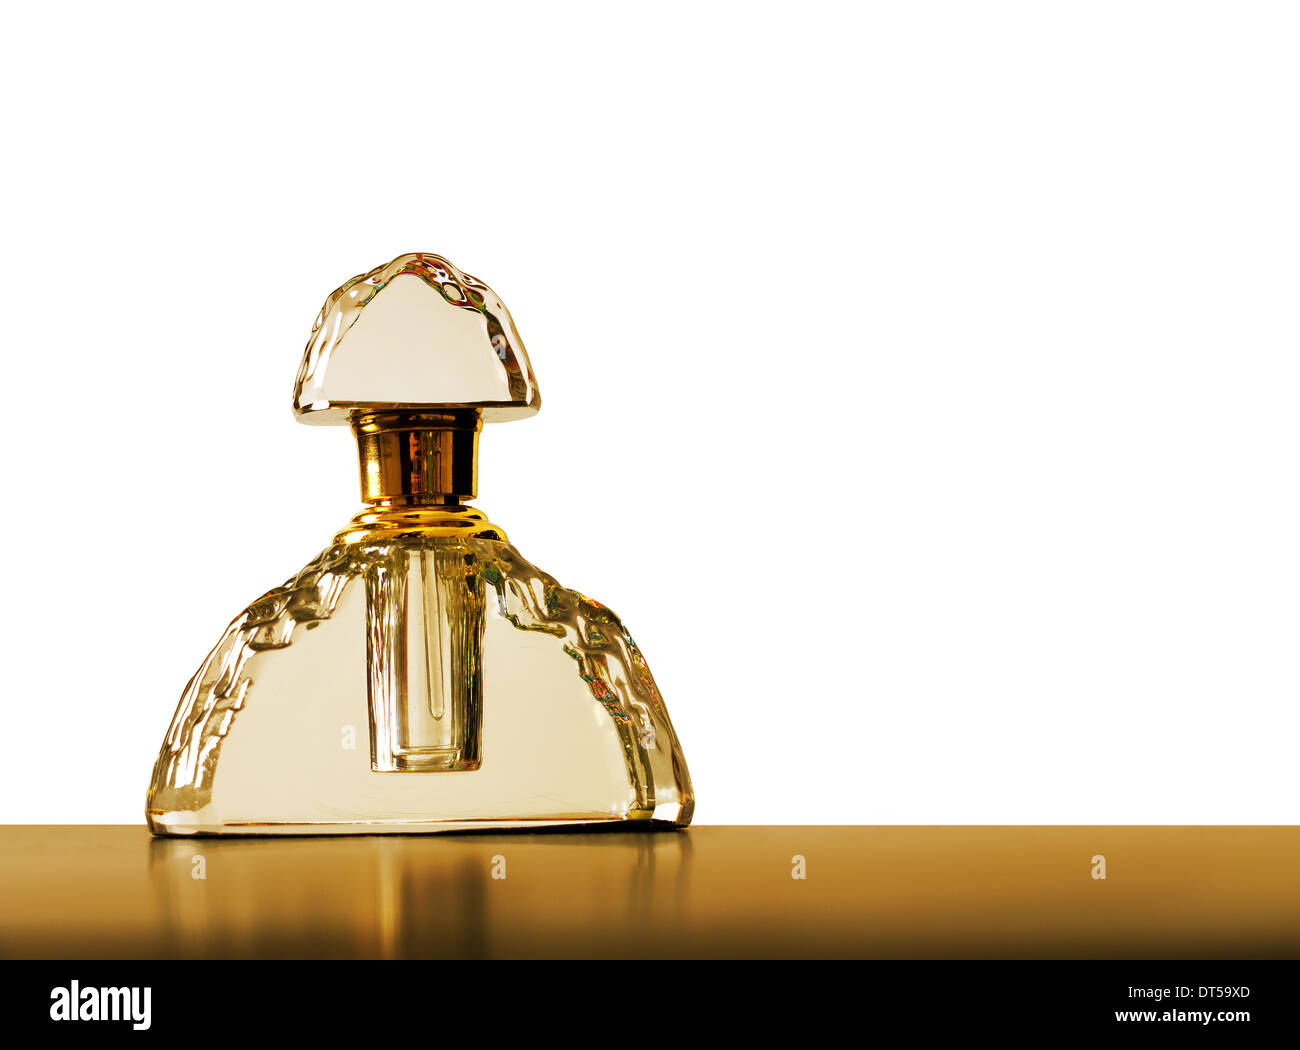 Frasco de perfume de oro, fondo blanco. Foto de stock